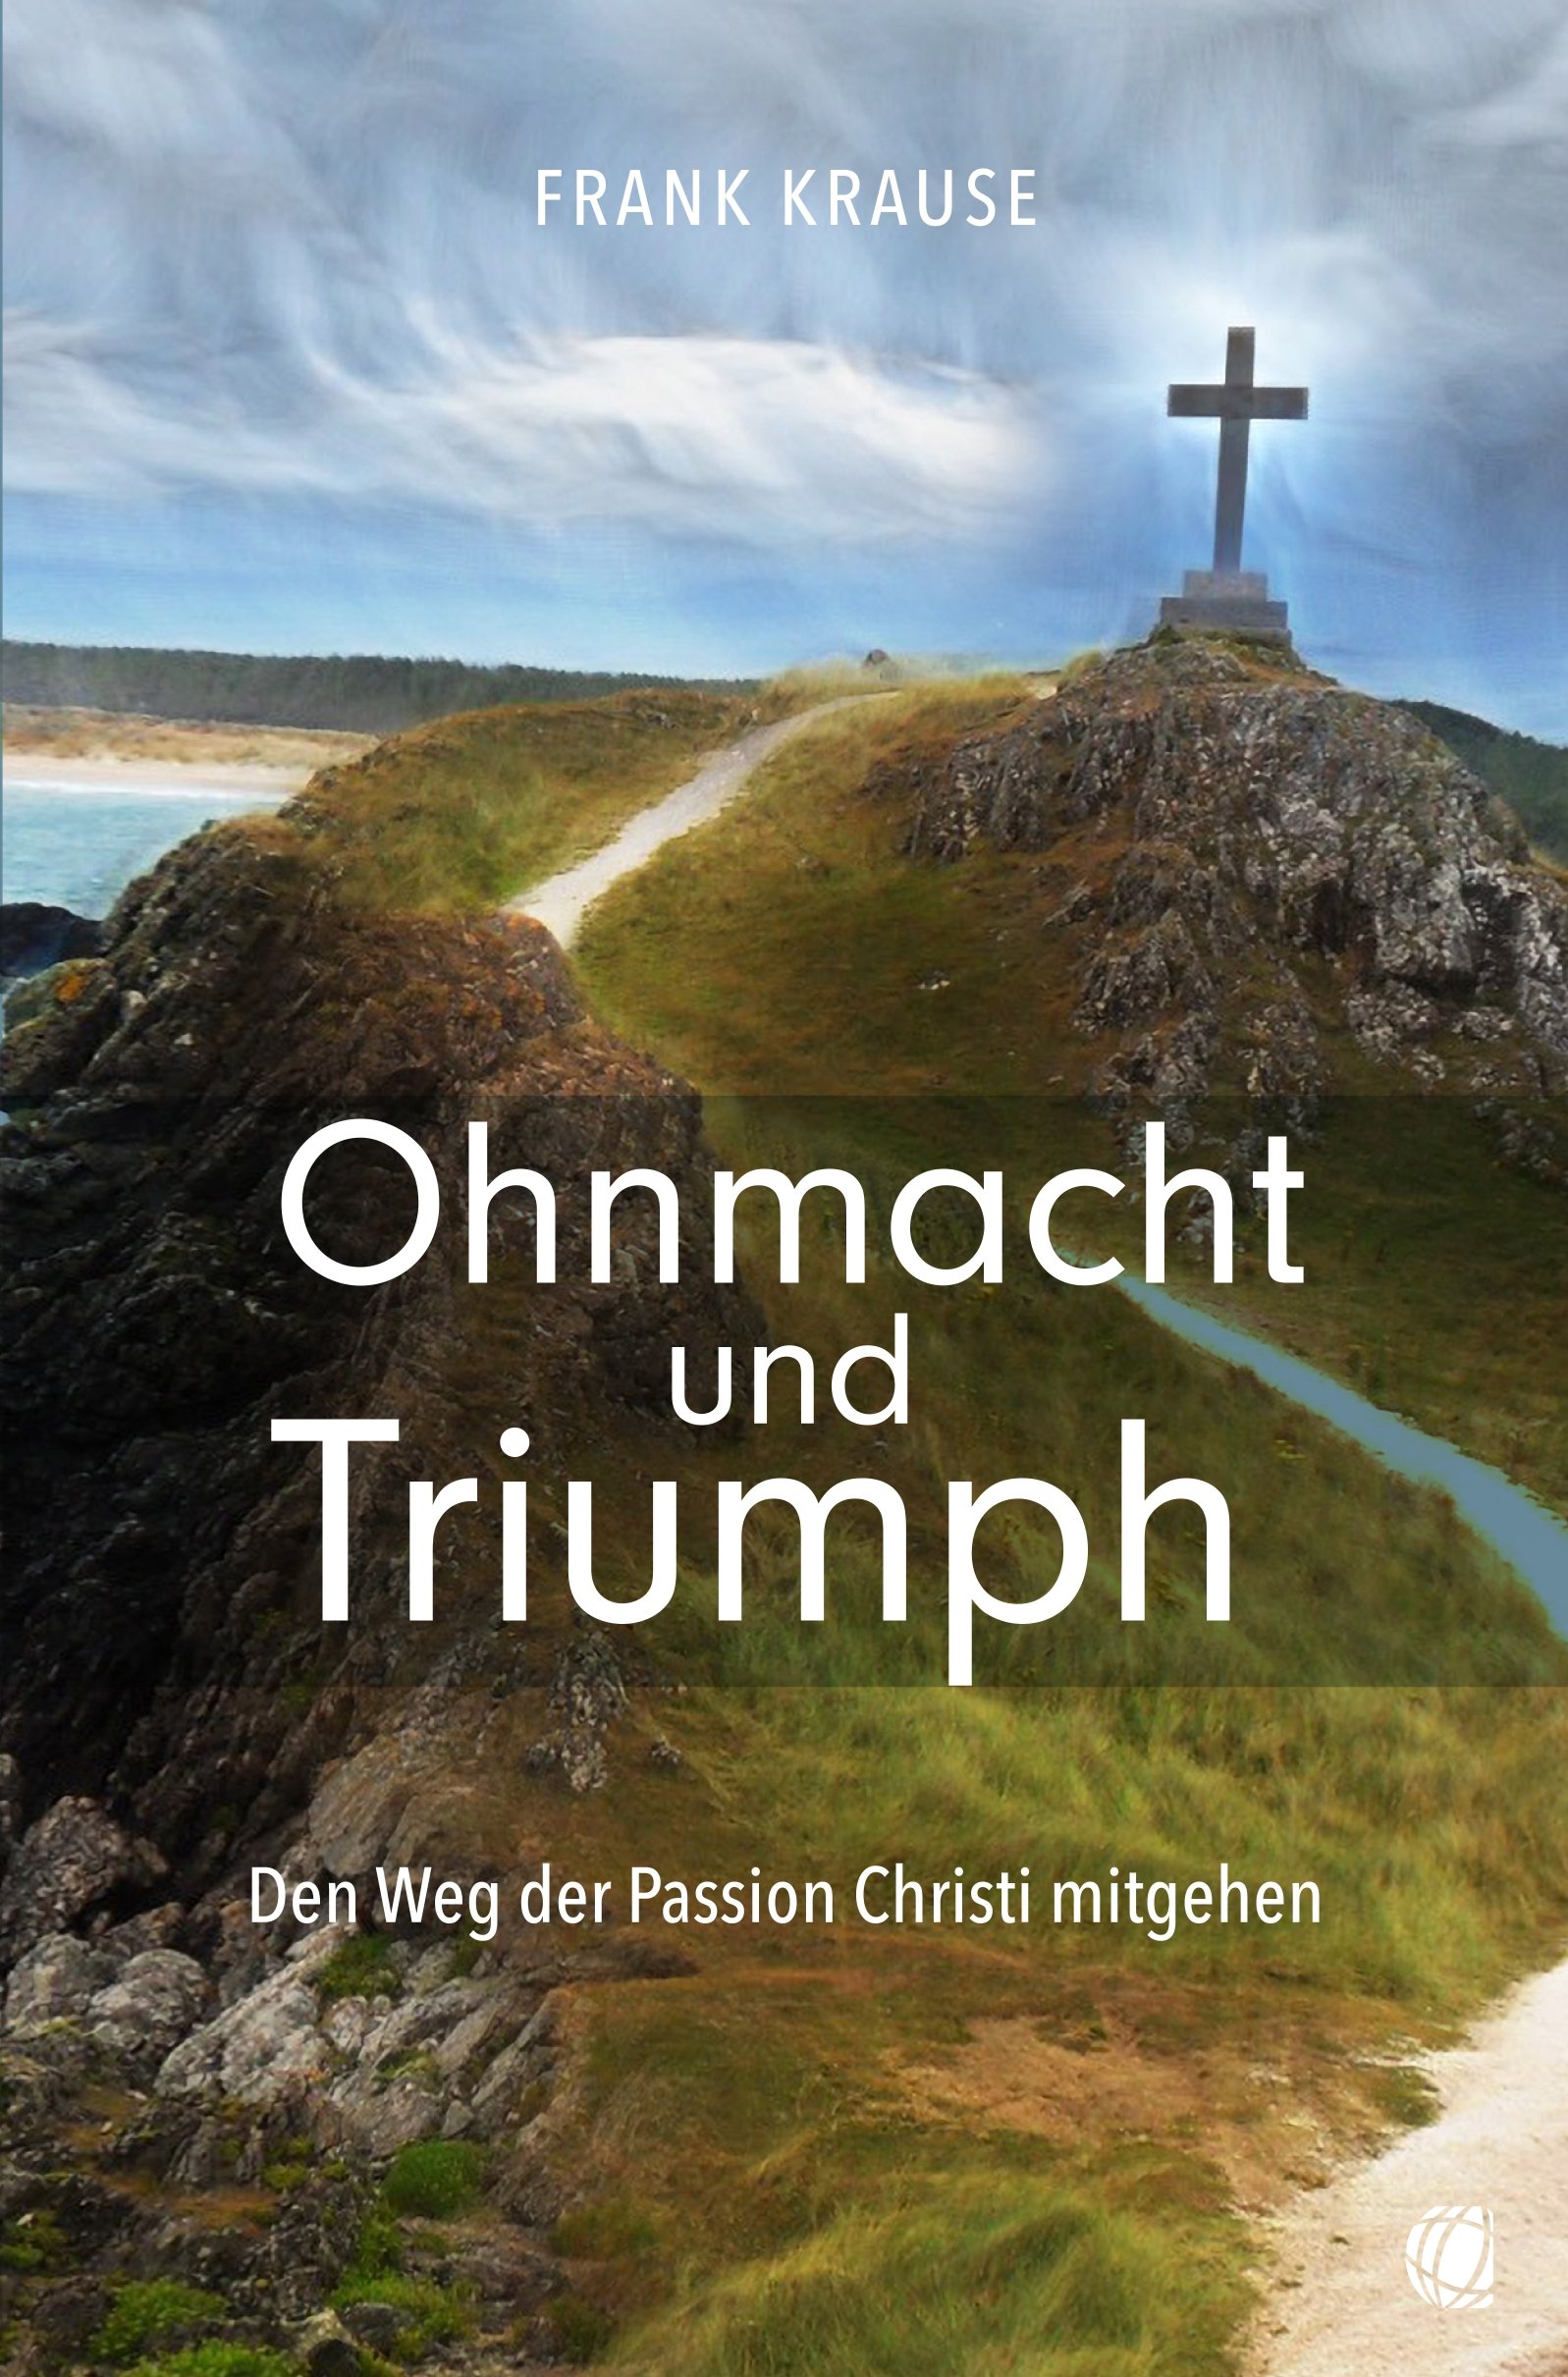 Ohnmacht und Triumph|Den Weg der Passion Christi mitgehen